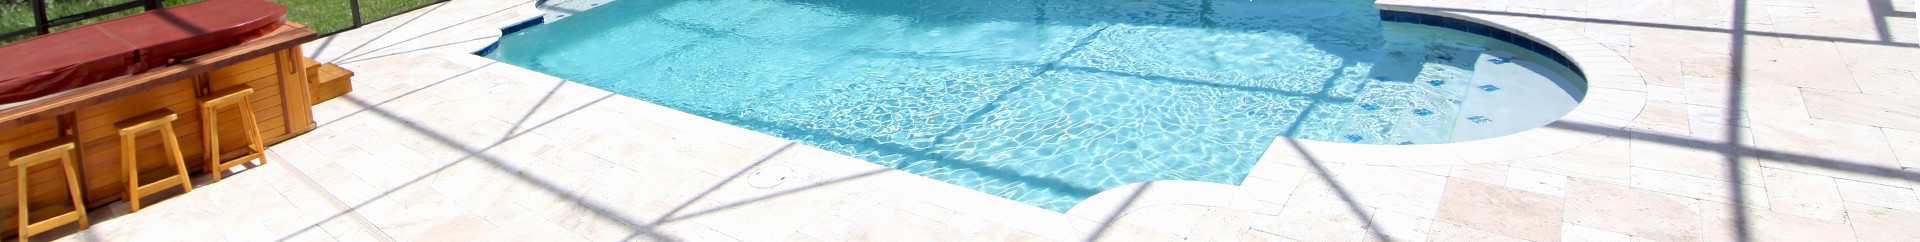 Margelles travertin piscine | Pierre naturelle | RO'MA Nature